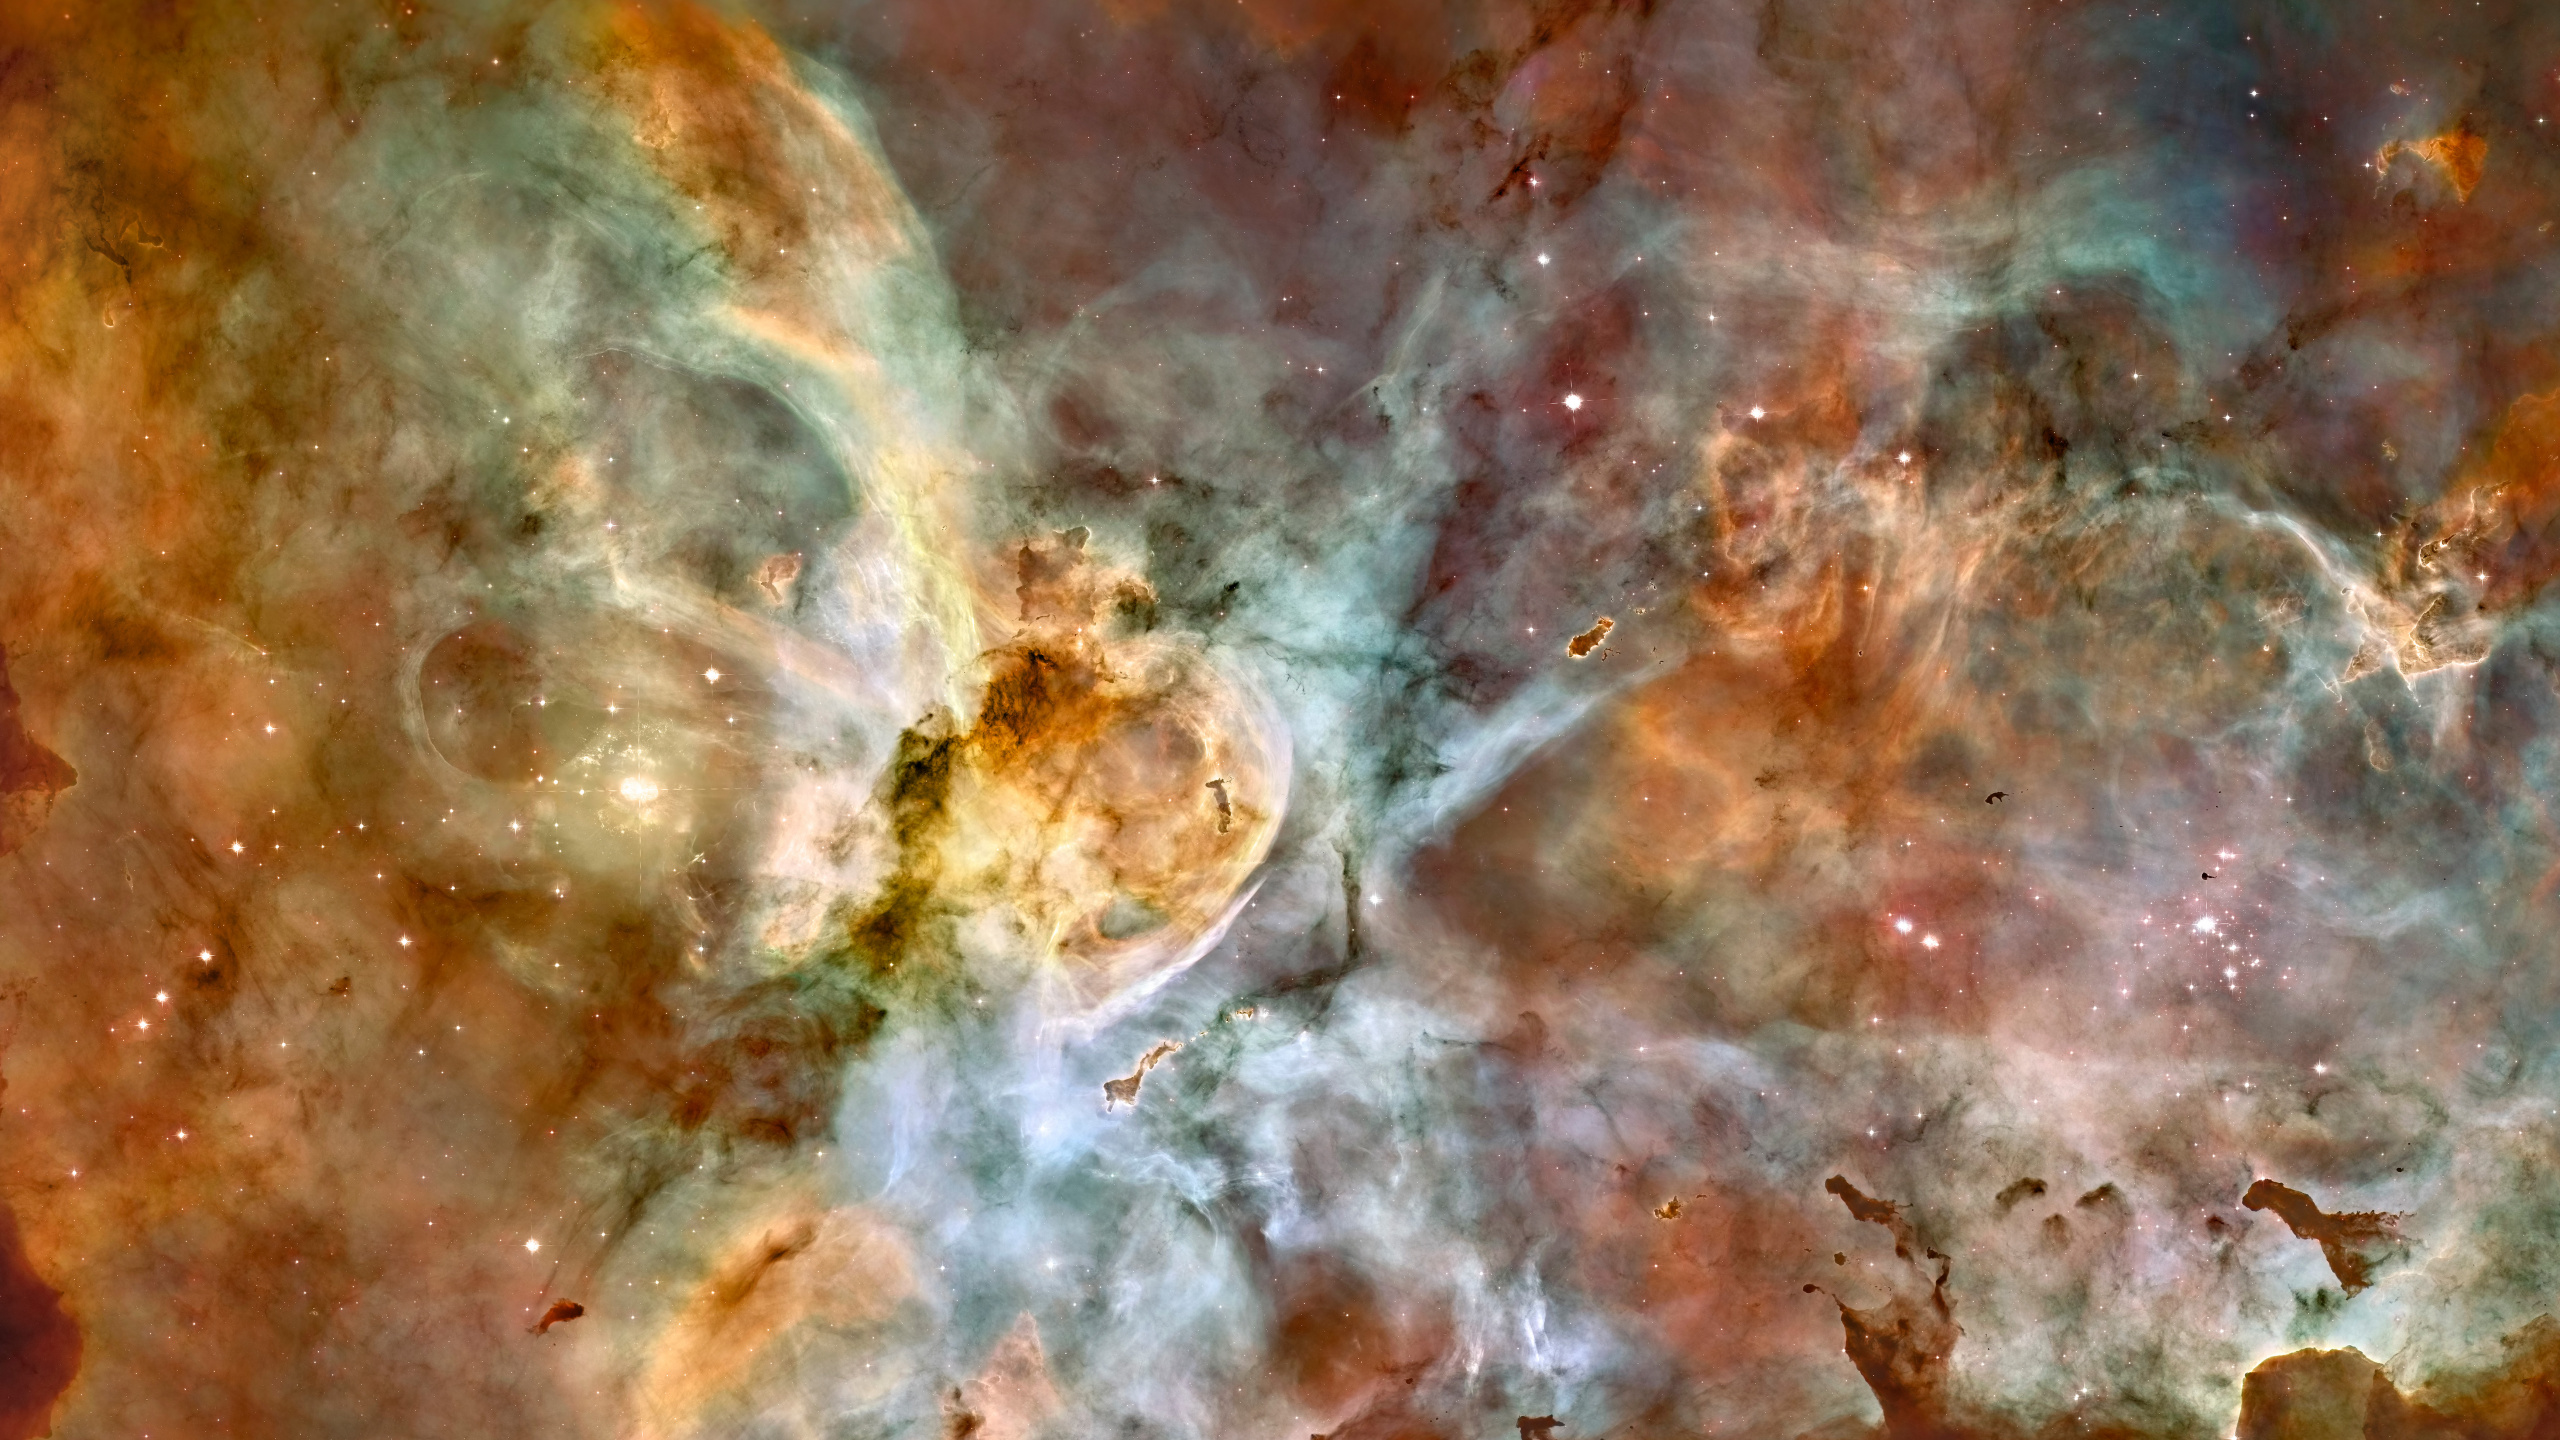 Carina星云, 哈勃太空望远镜, 明星, 空间, 天文学对象 壁纸 2560x1440 允许